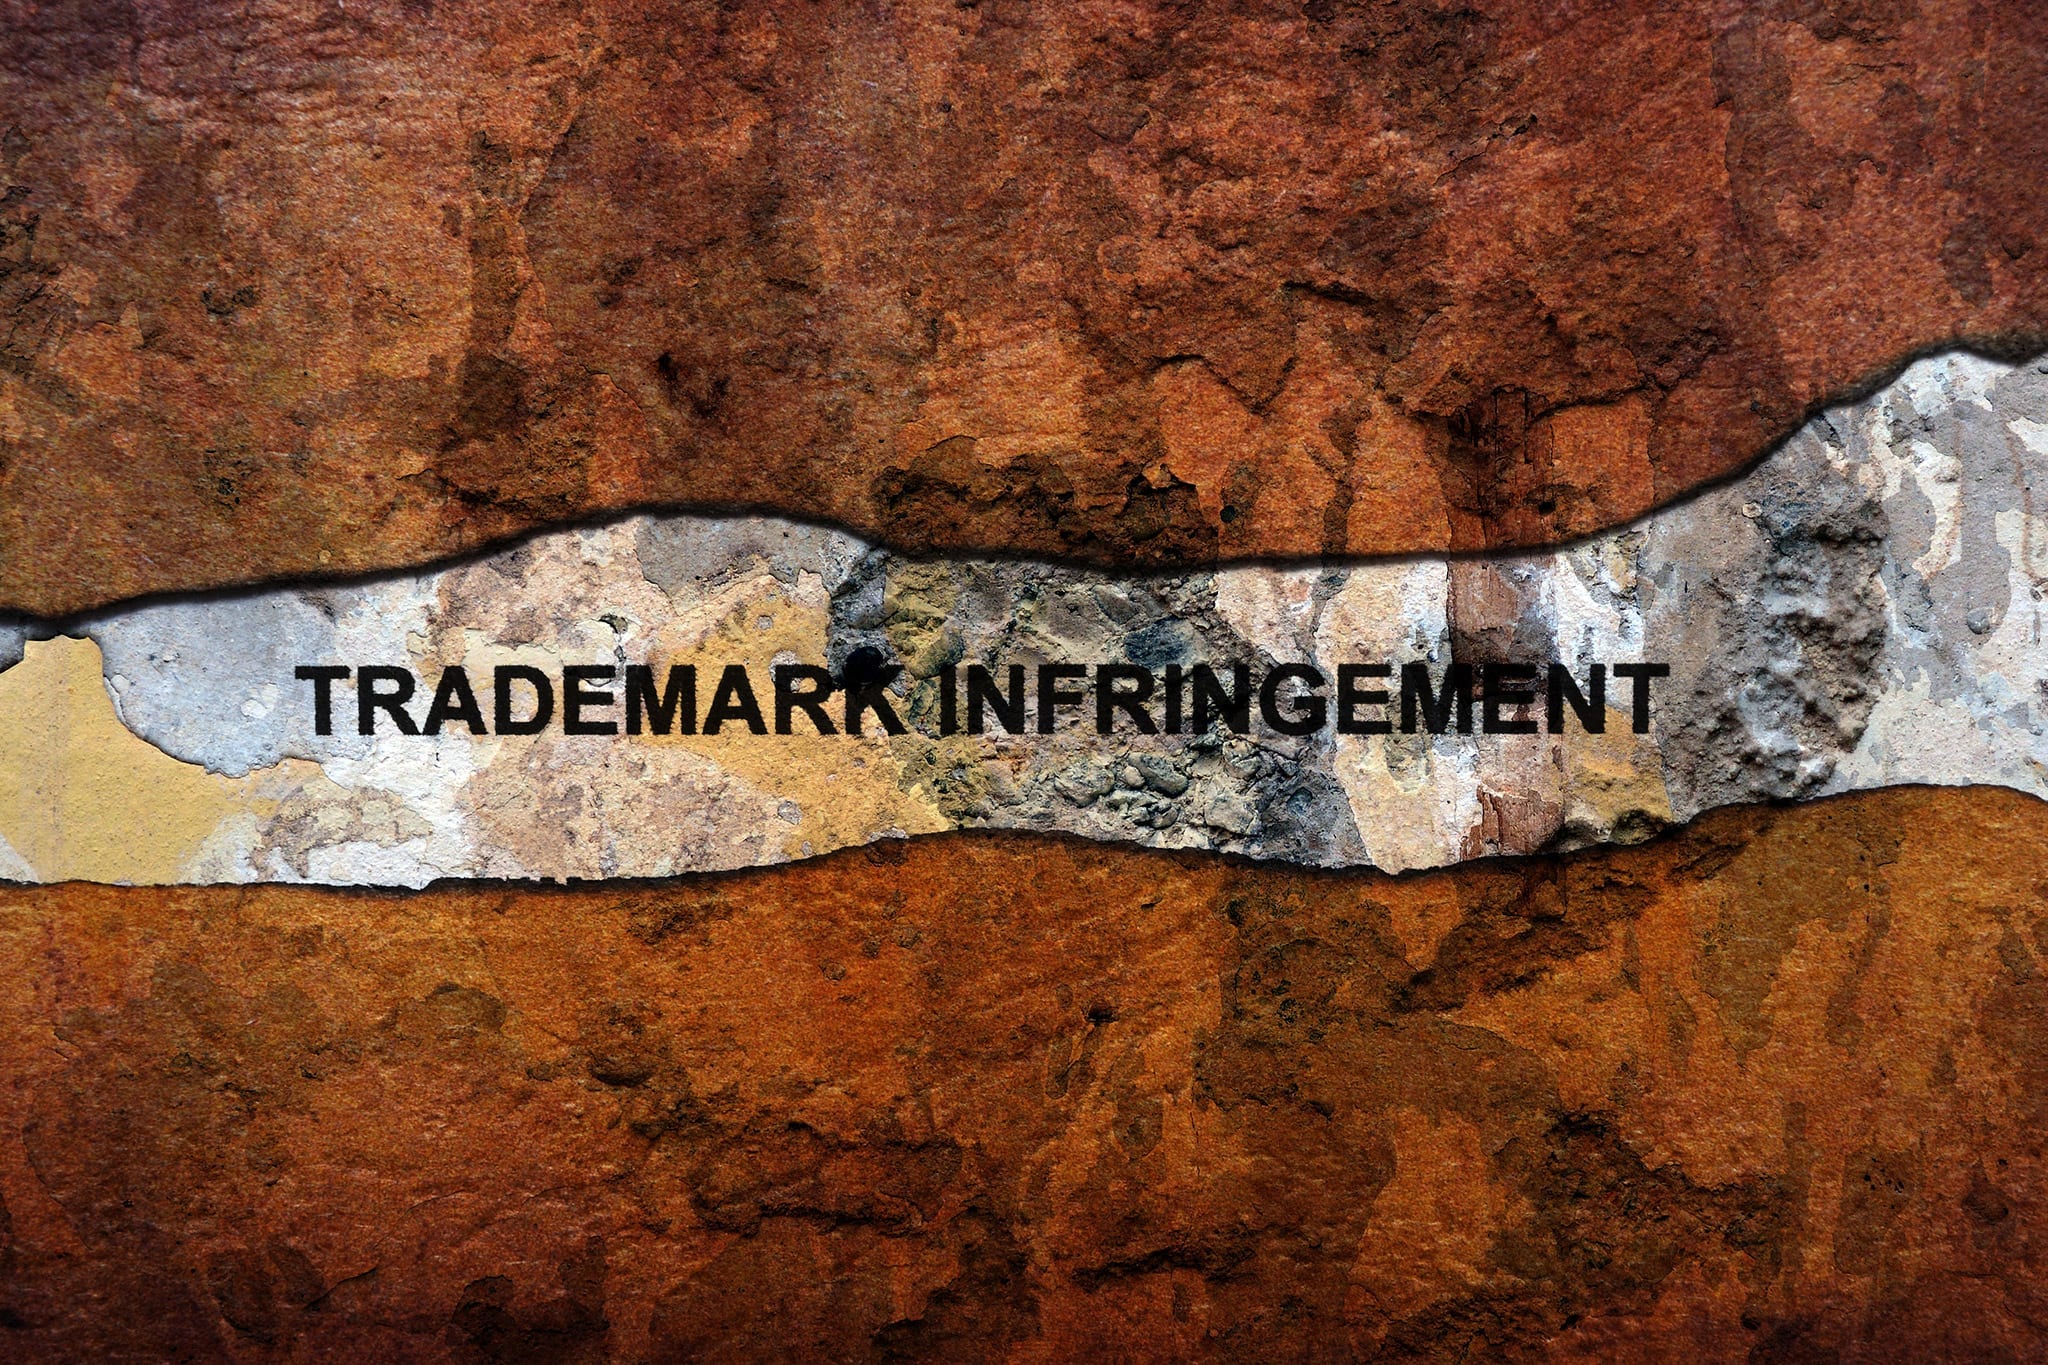 Trademark Infringement Spotlight: Shrewd Ways to Protect Your IP